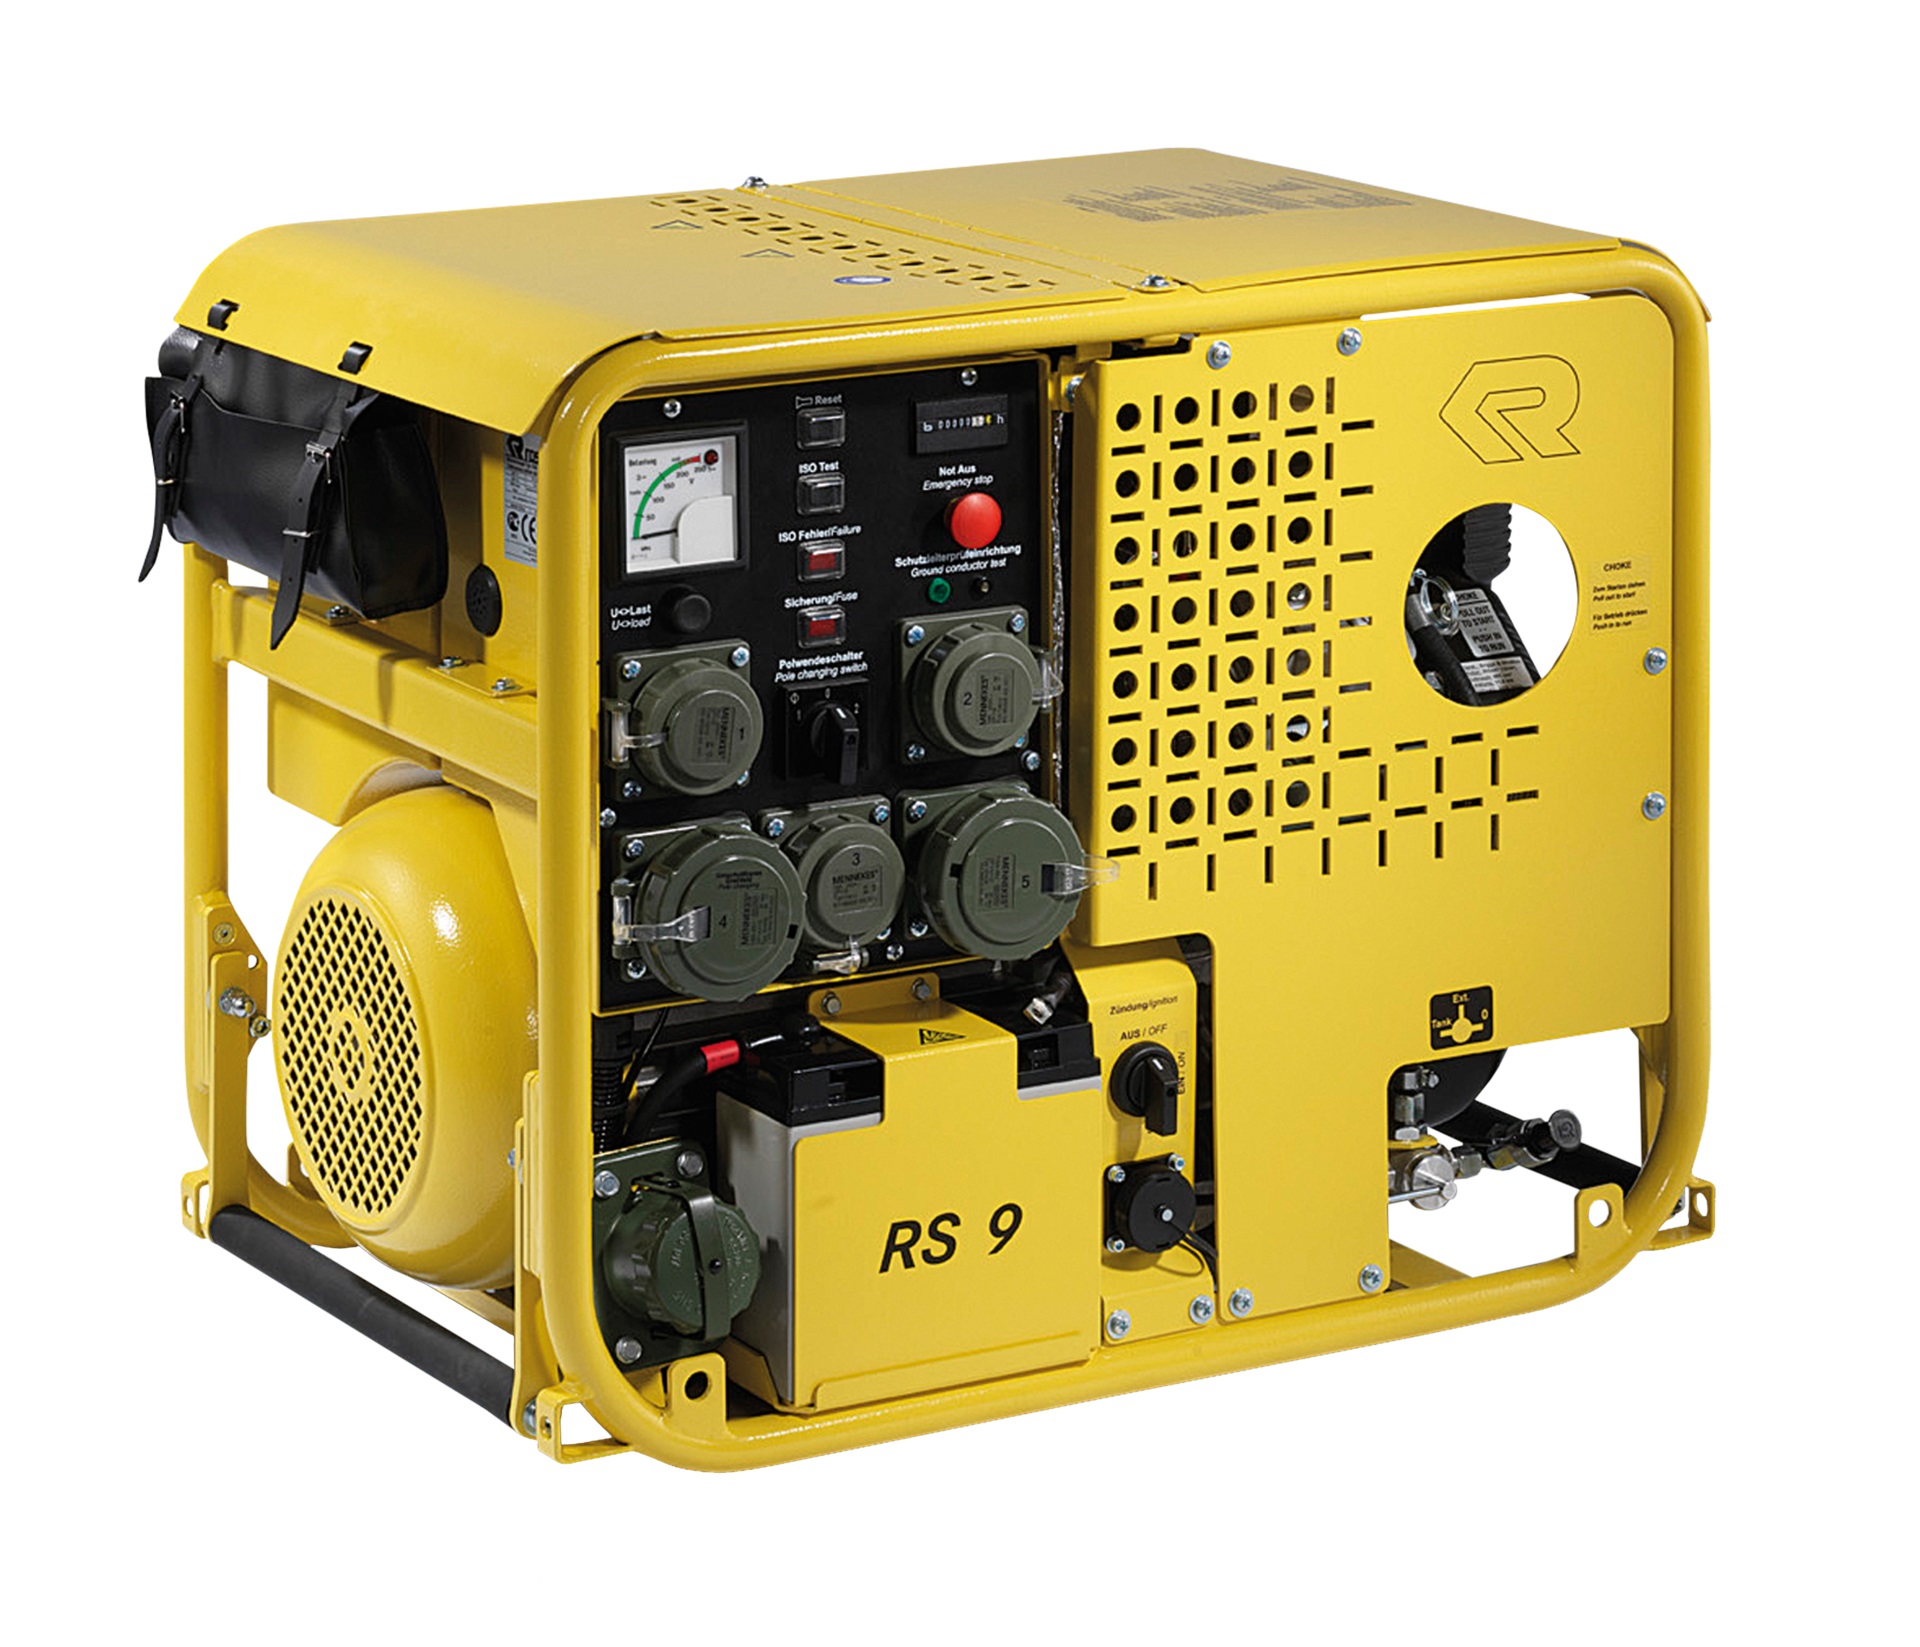 Rosenbauer Stromerzeuger RS 9 gelb DIN 14685-1, mit E-Start